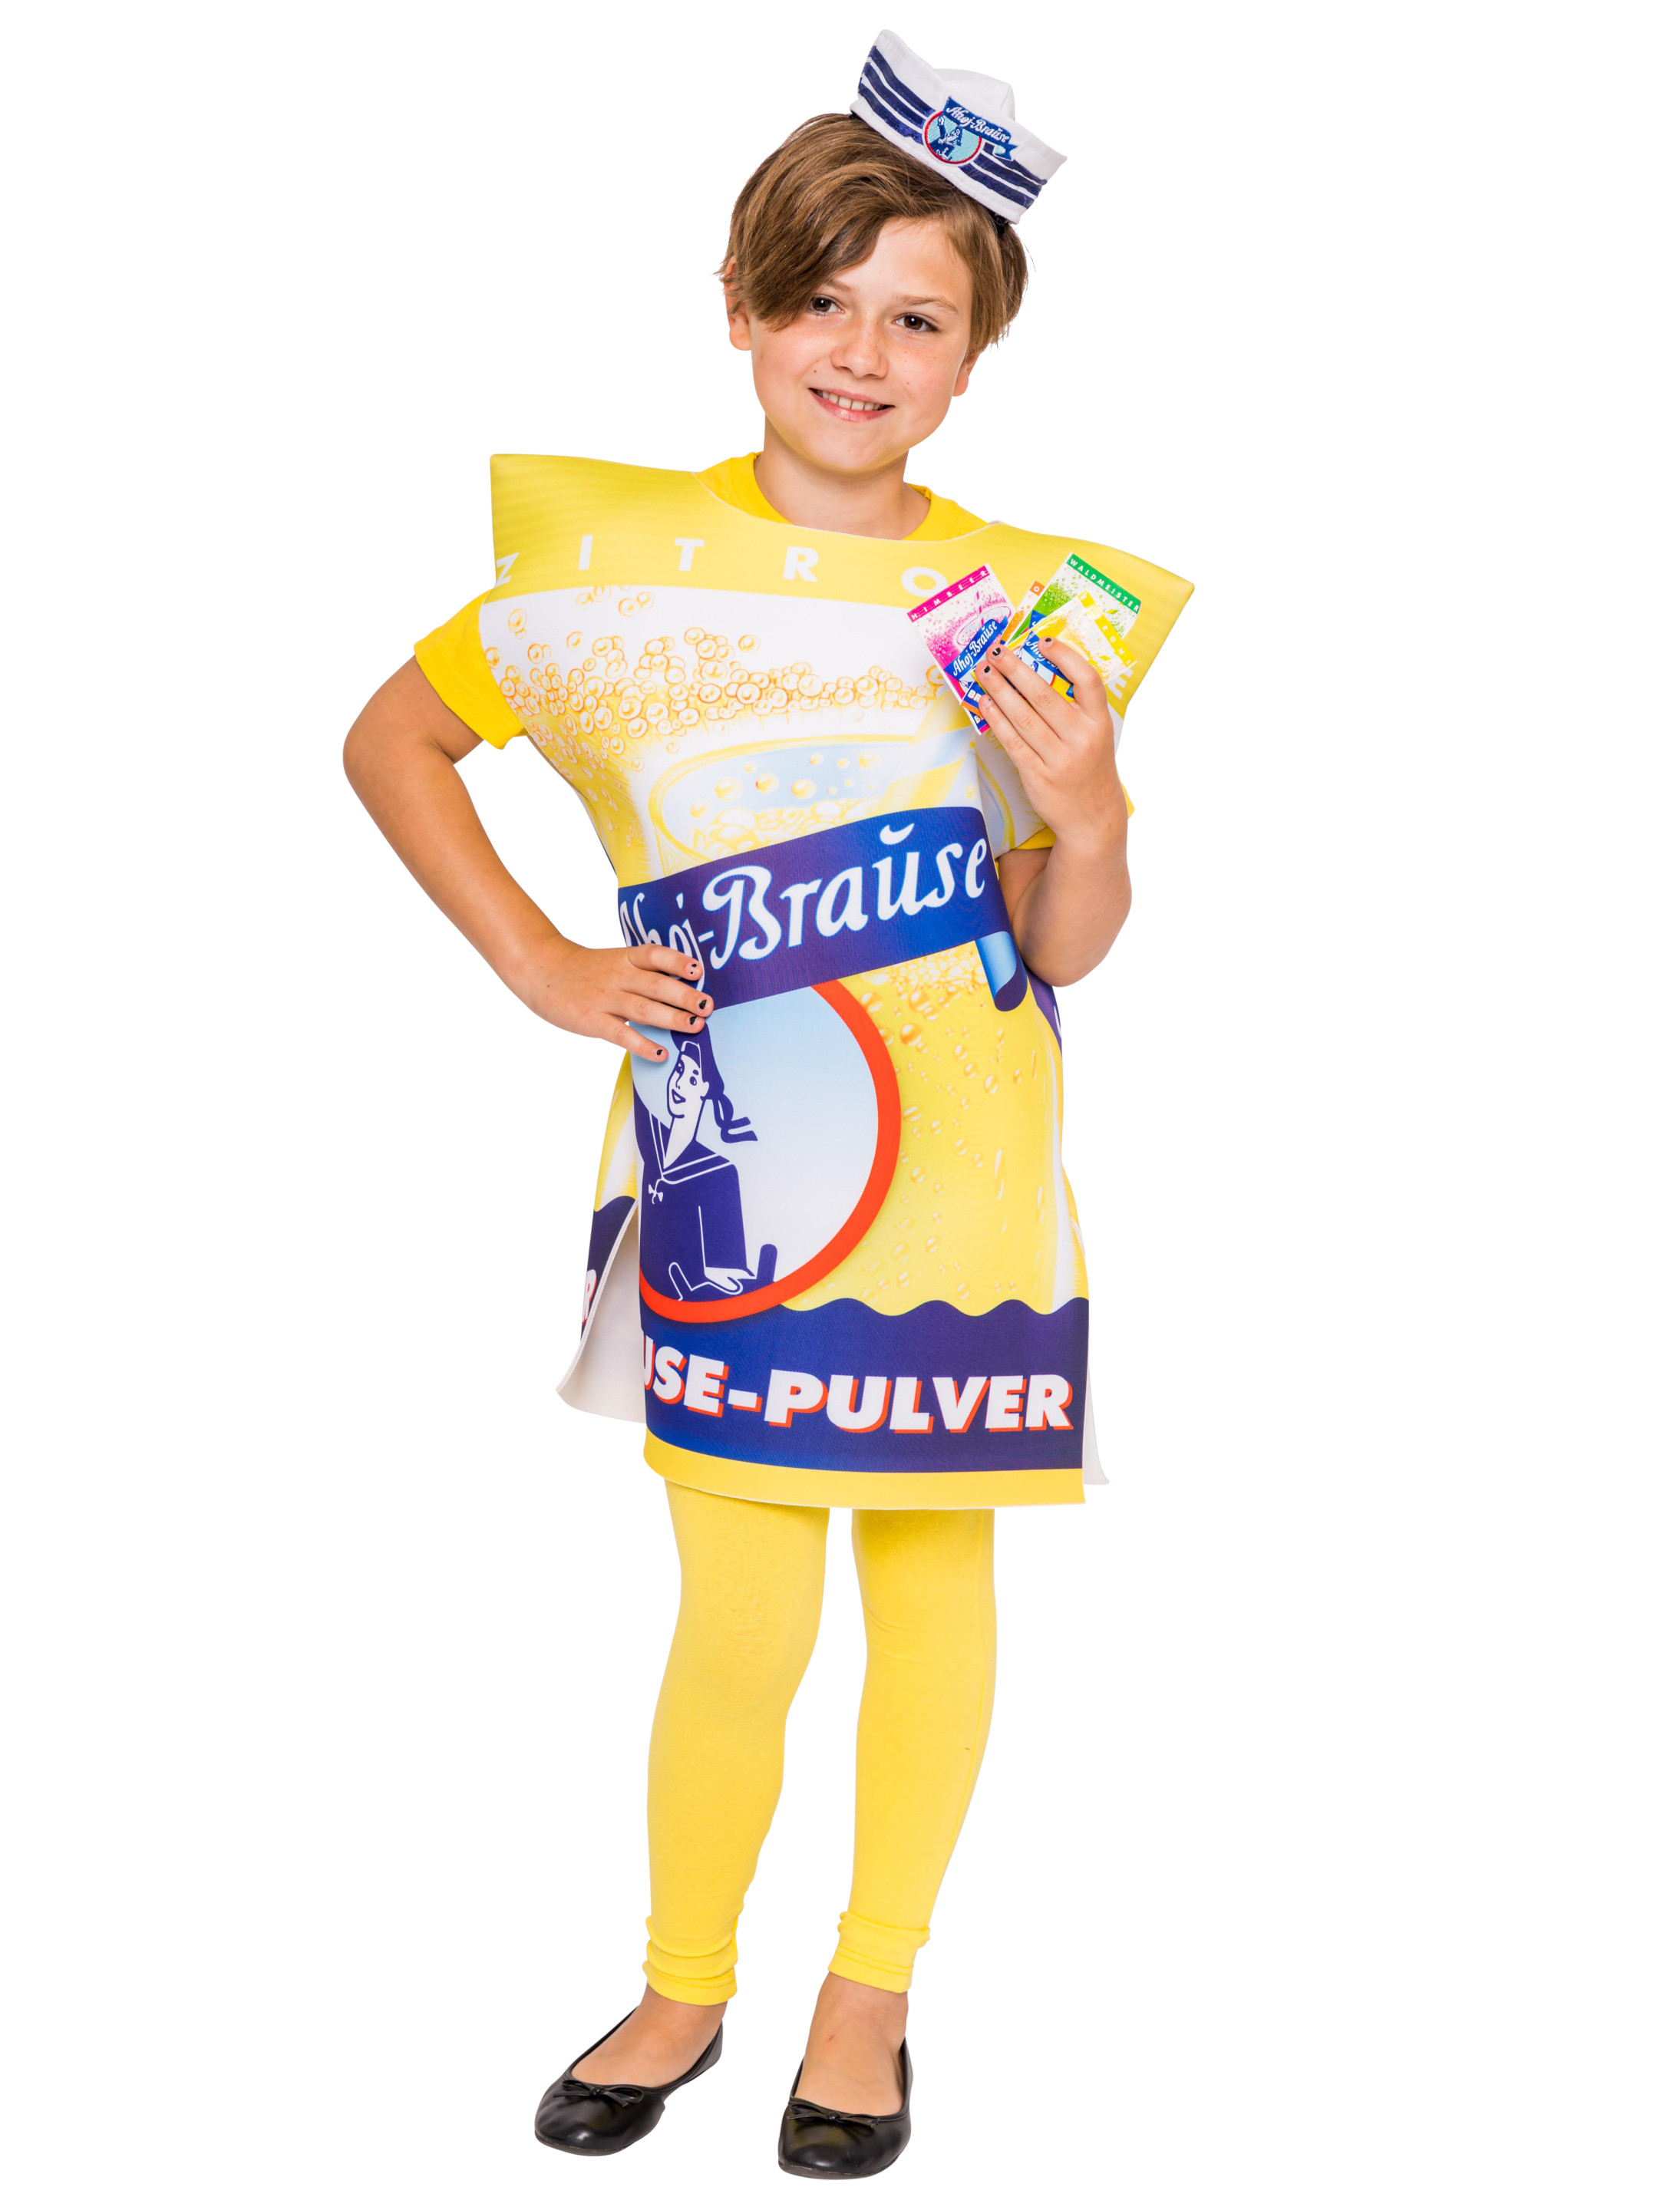 Kostüm Ahoj-Brause Zitrone Kinder jetzt kaufen » Deiters